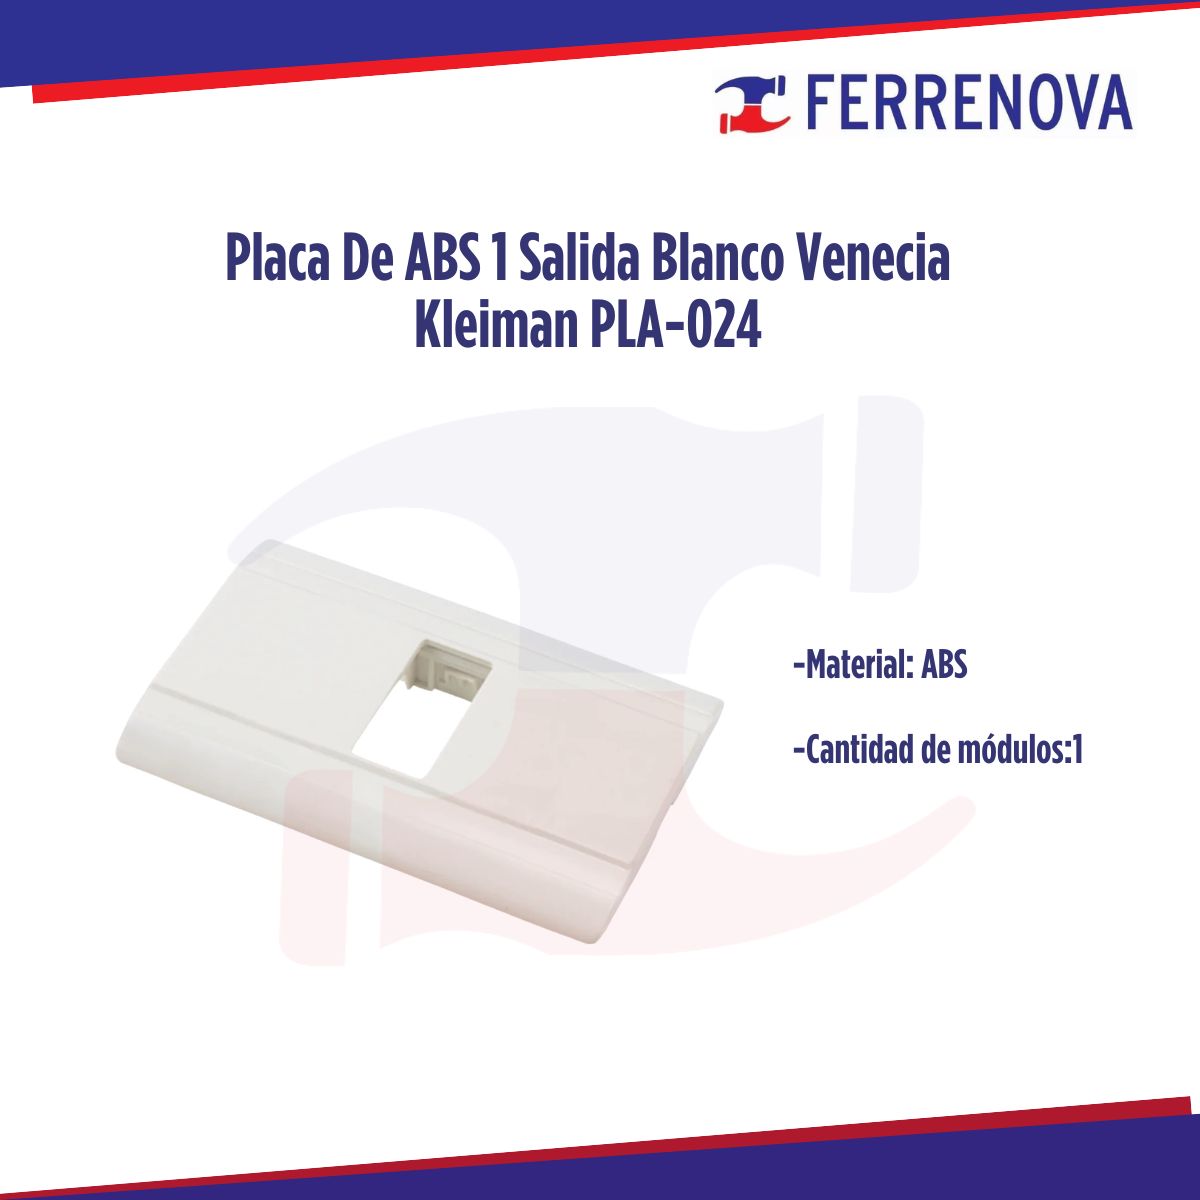 Placa De ABS 1 Salidas Blanco Venecia Kleiman PLA-024